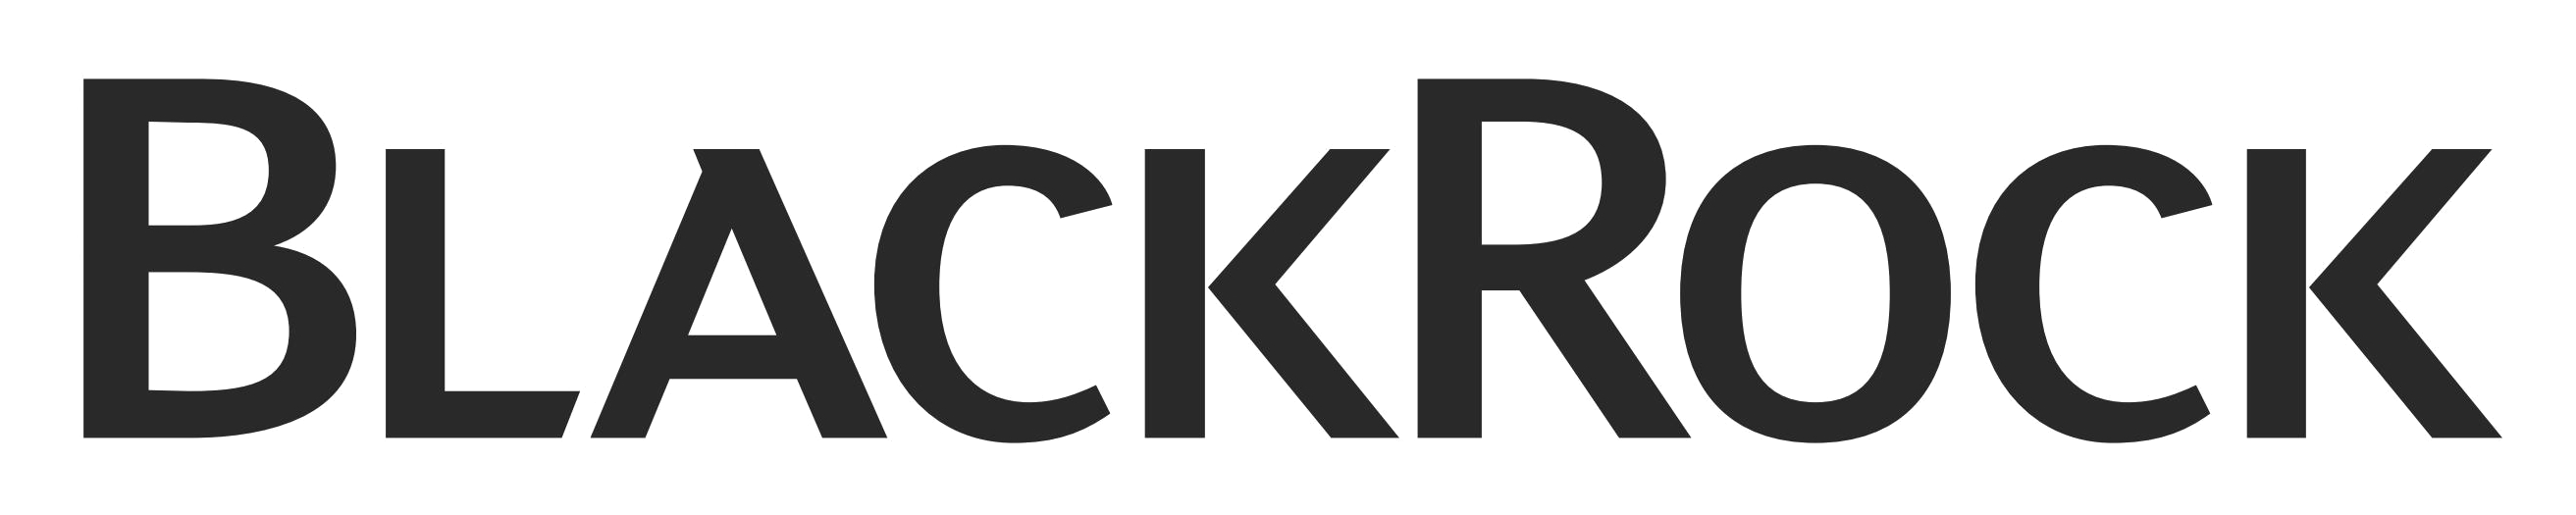 Purepng.com Blackrock Logologobrand Logoiconslogos 251519938910ako99 